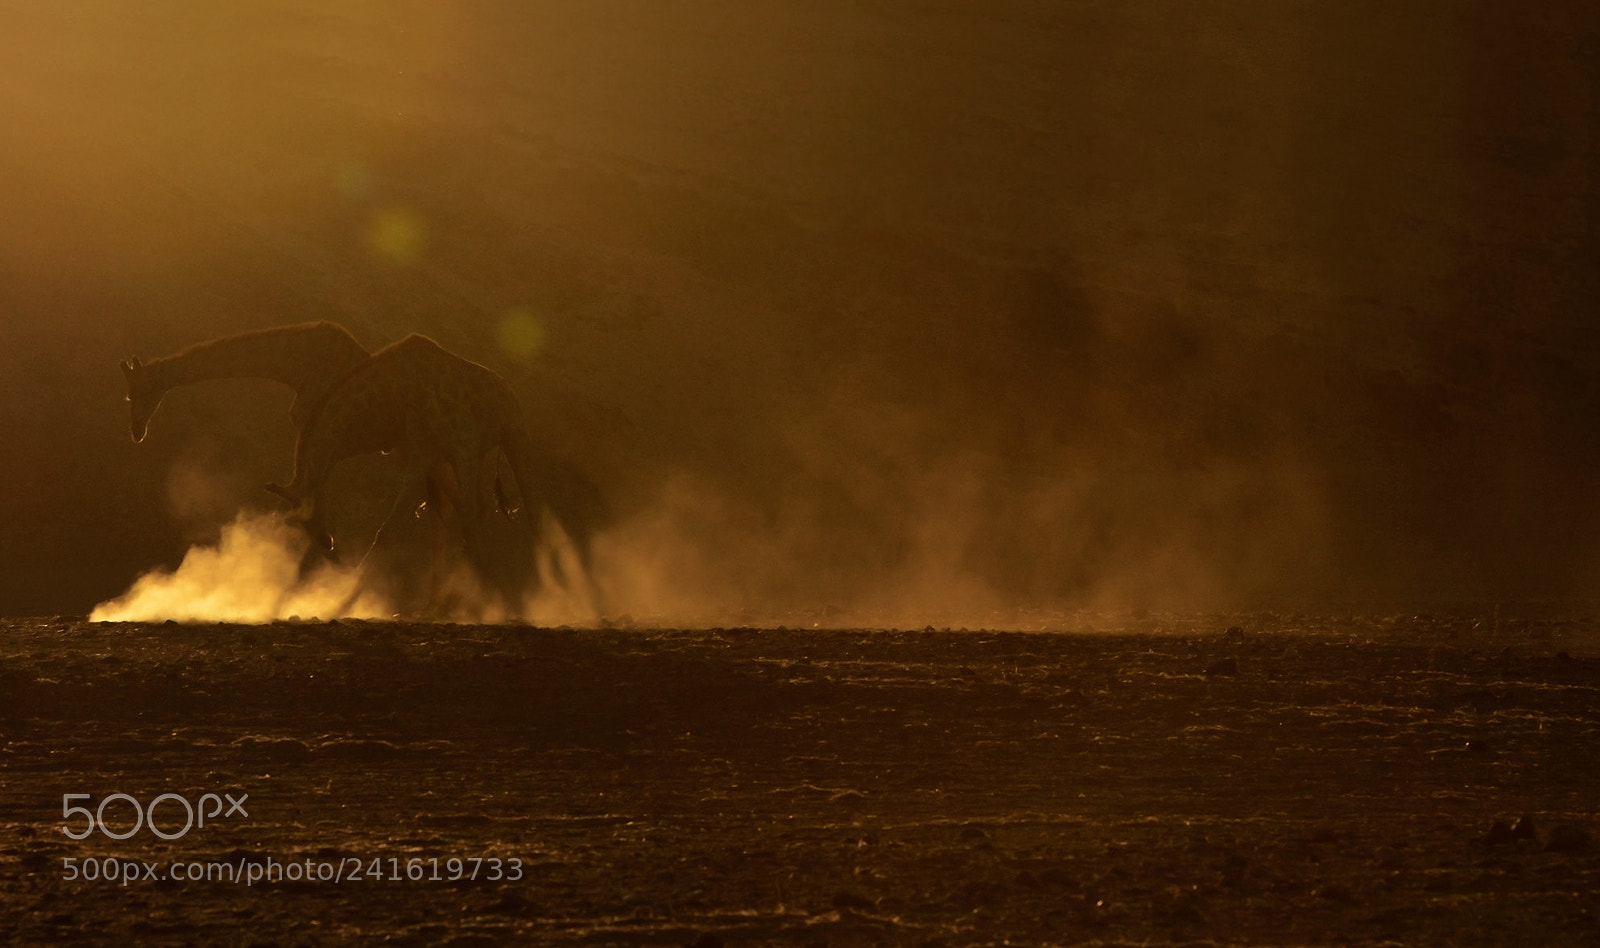 Nikon D7000 sample photo. Giraffe battle at sunset photography